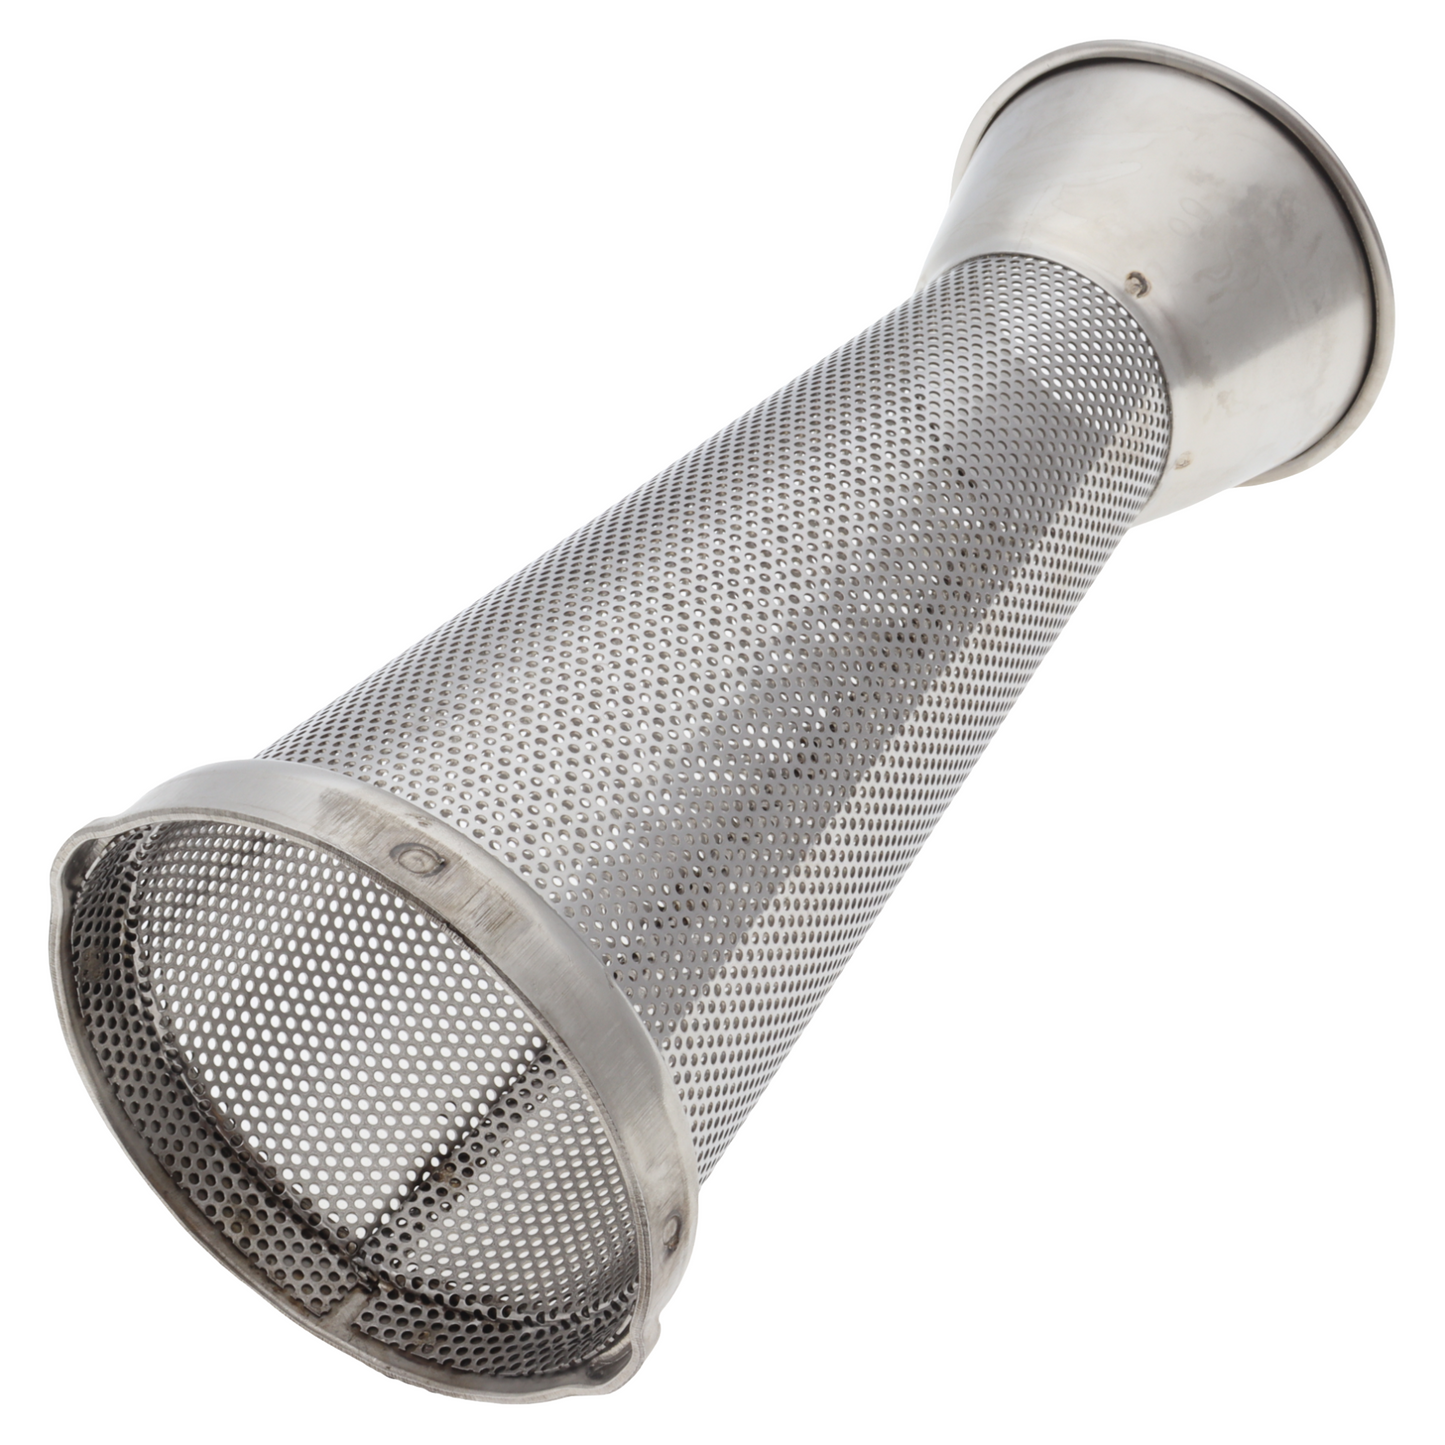 Reber cono filtro inox n. 5 fori standard 1,5mm passapomodoro spremipomodoro